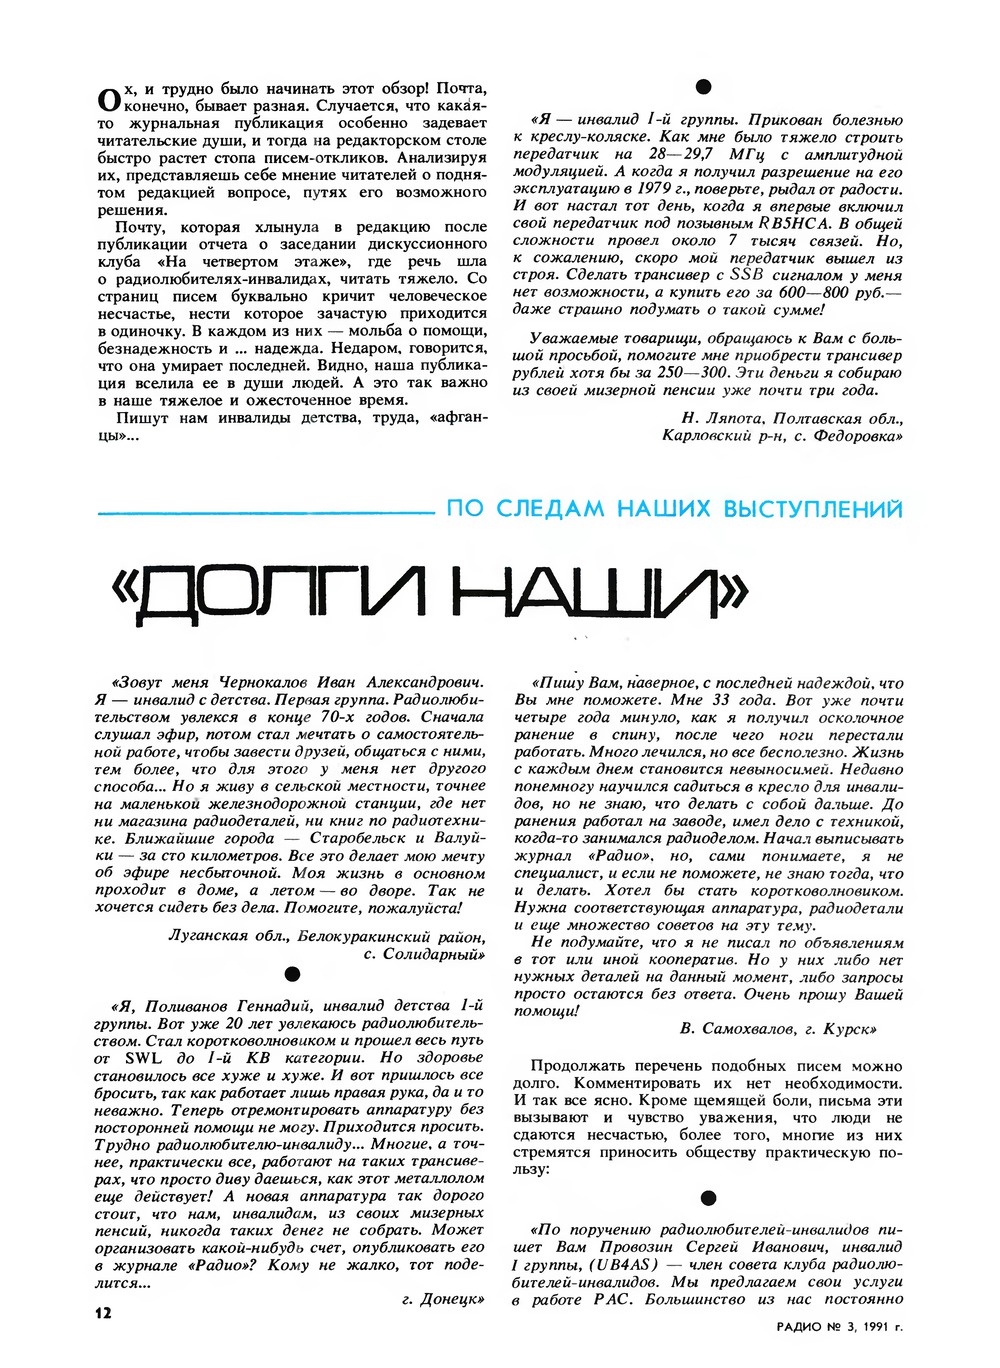 Стр. 12 журнала «Радио» № 3 за 1991 год